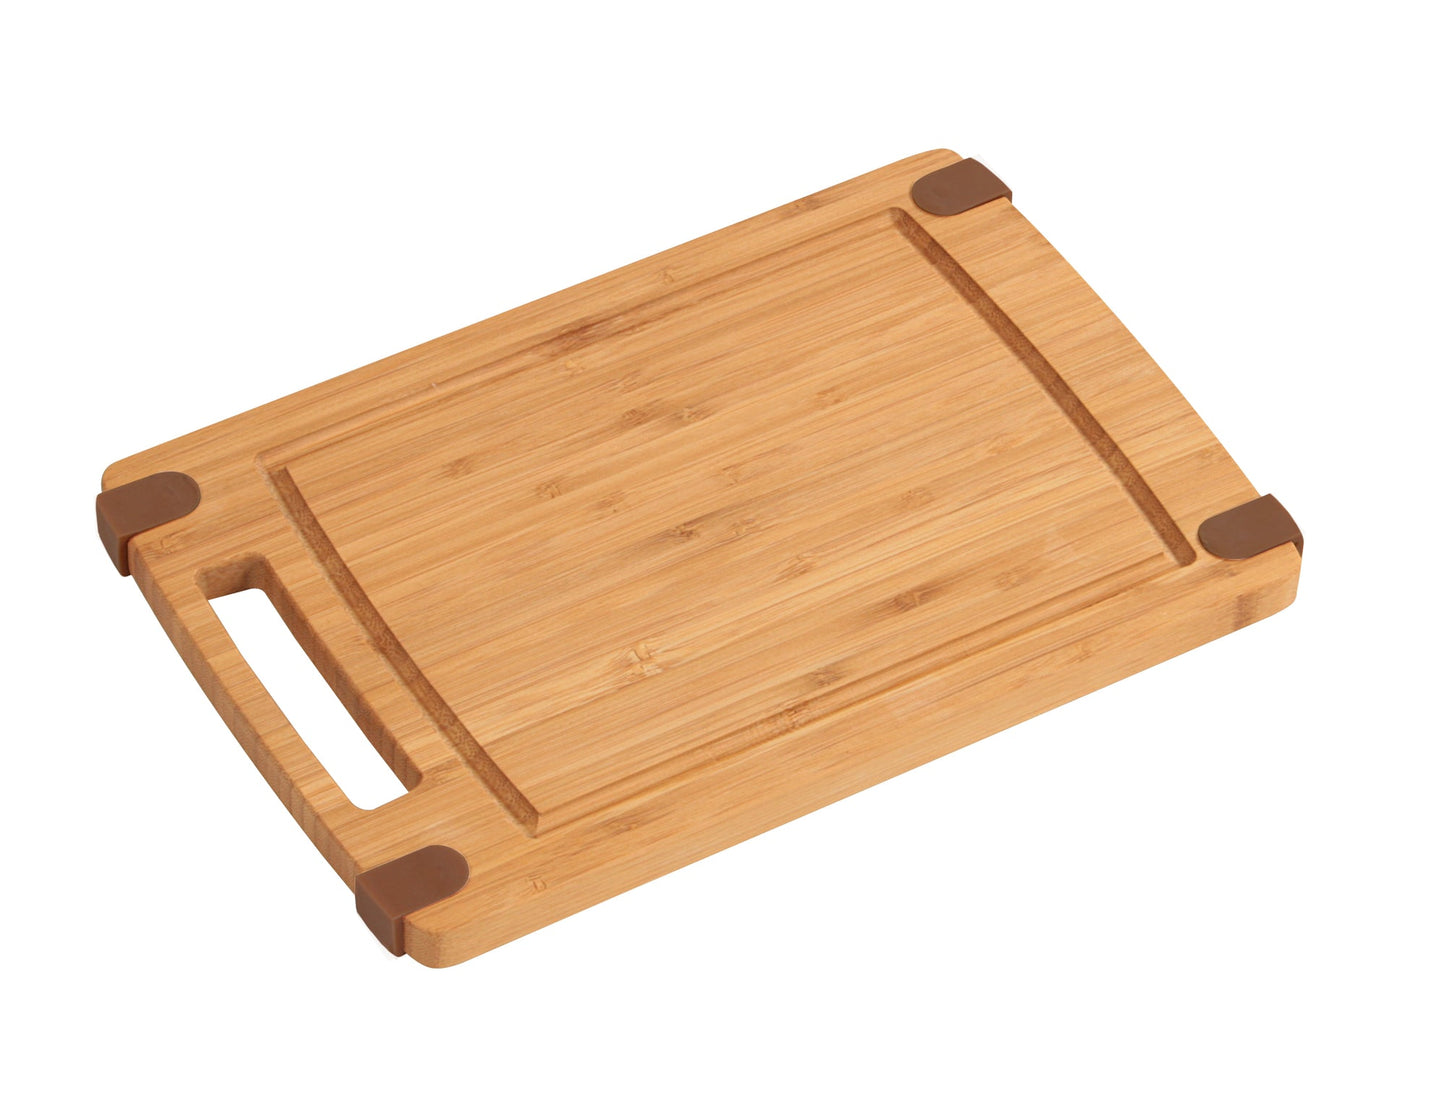 Kesper cutting board with anti-slip M